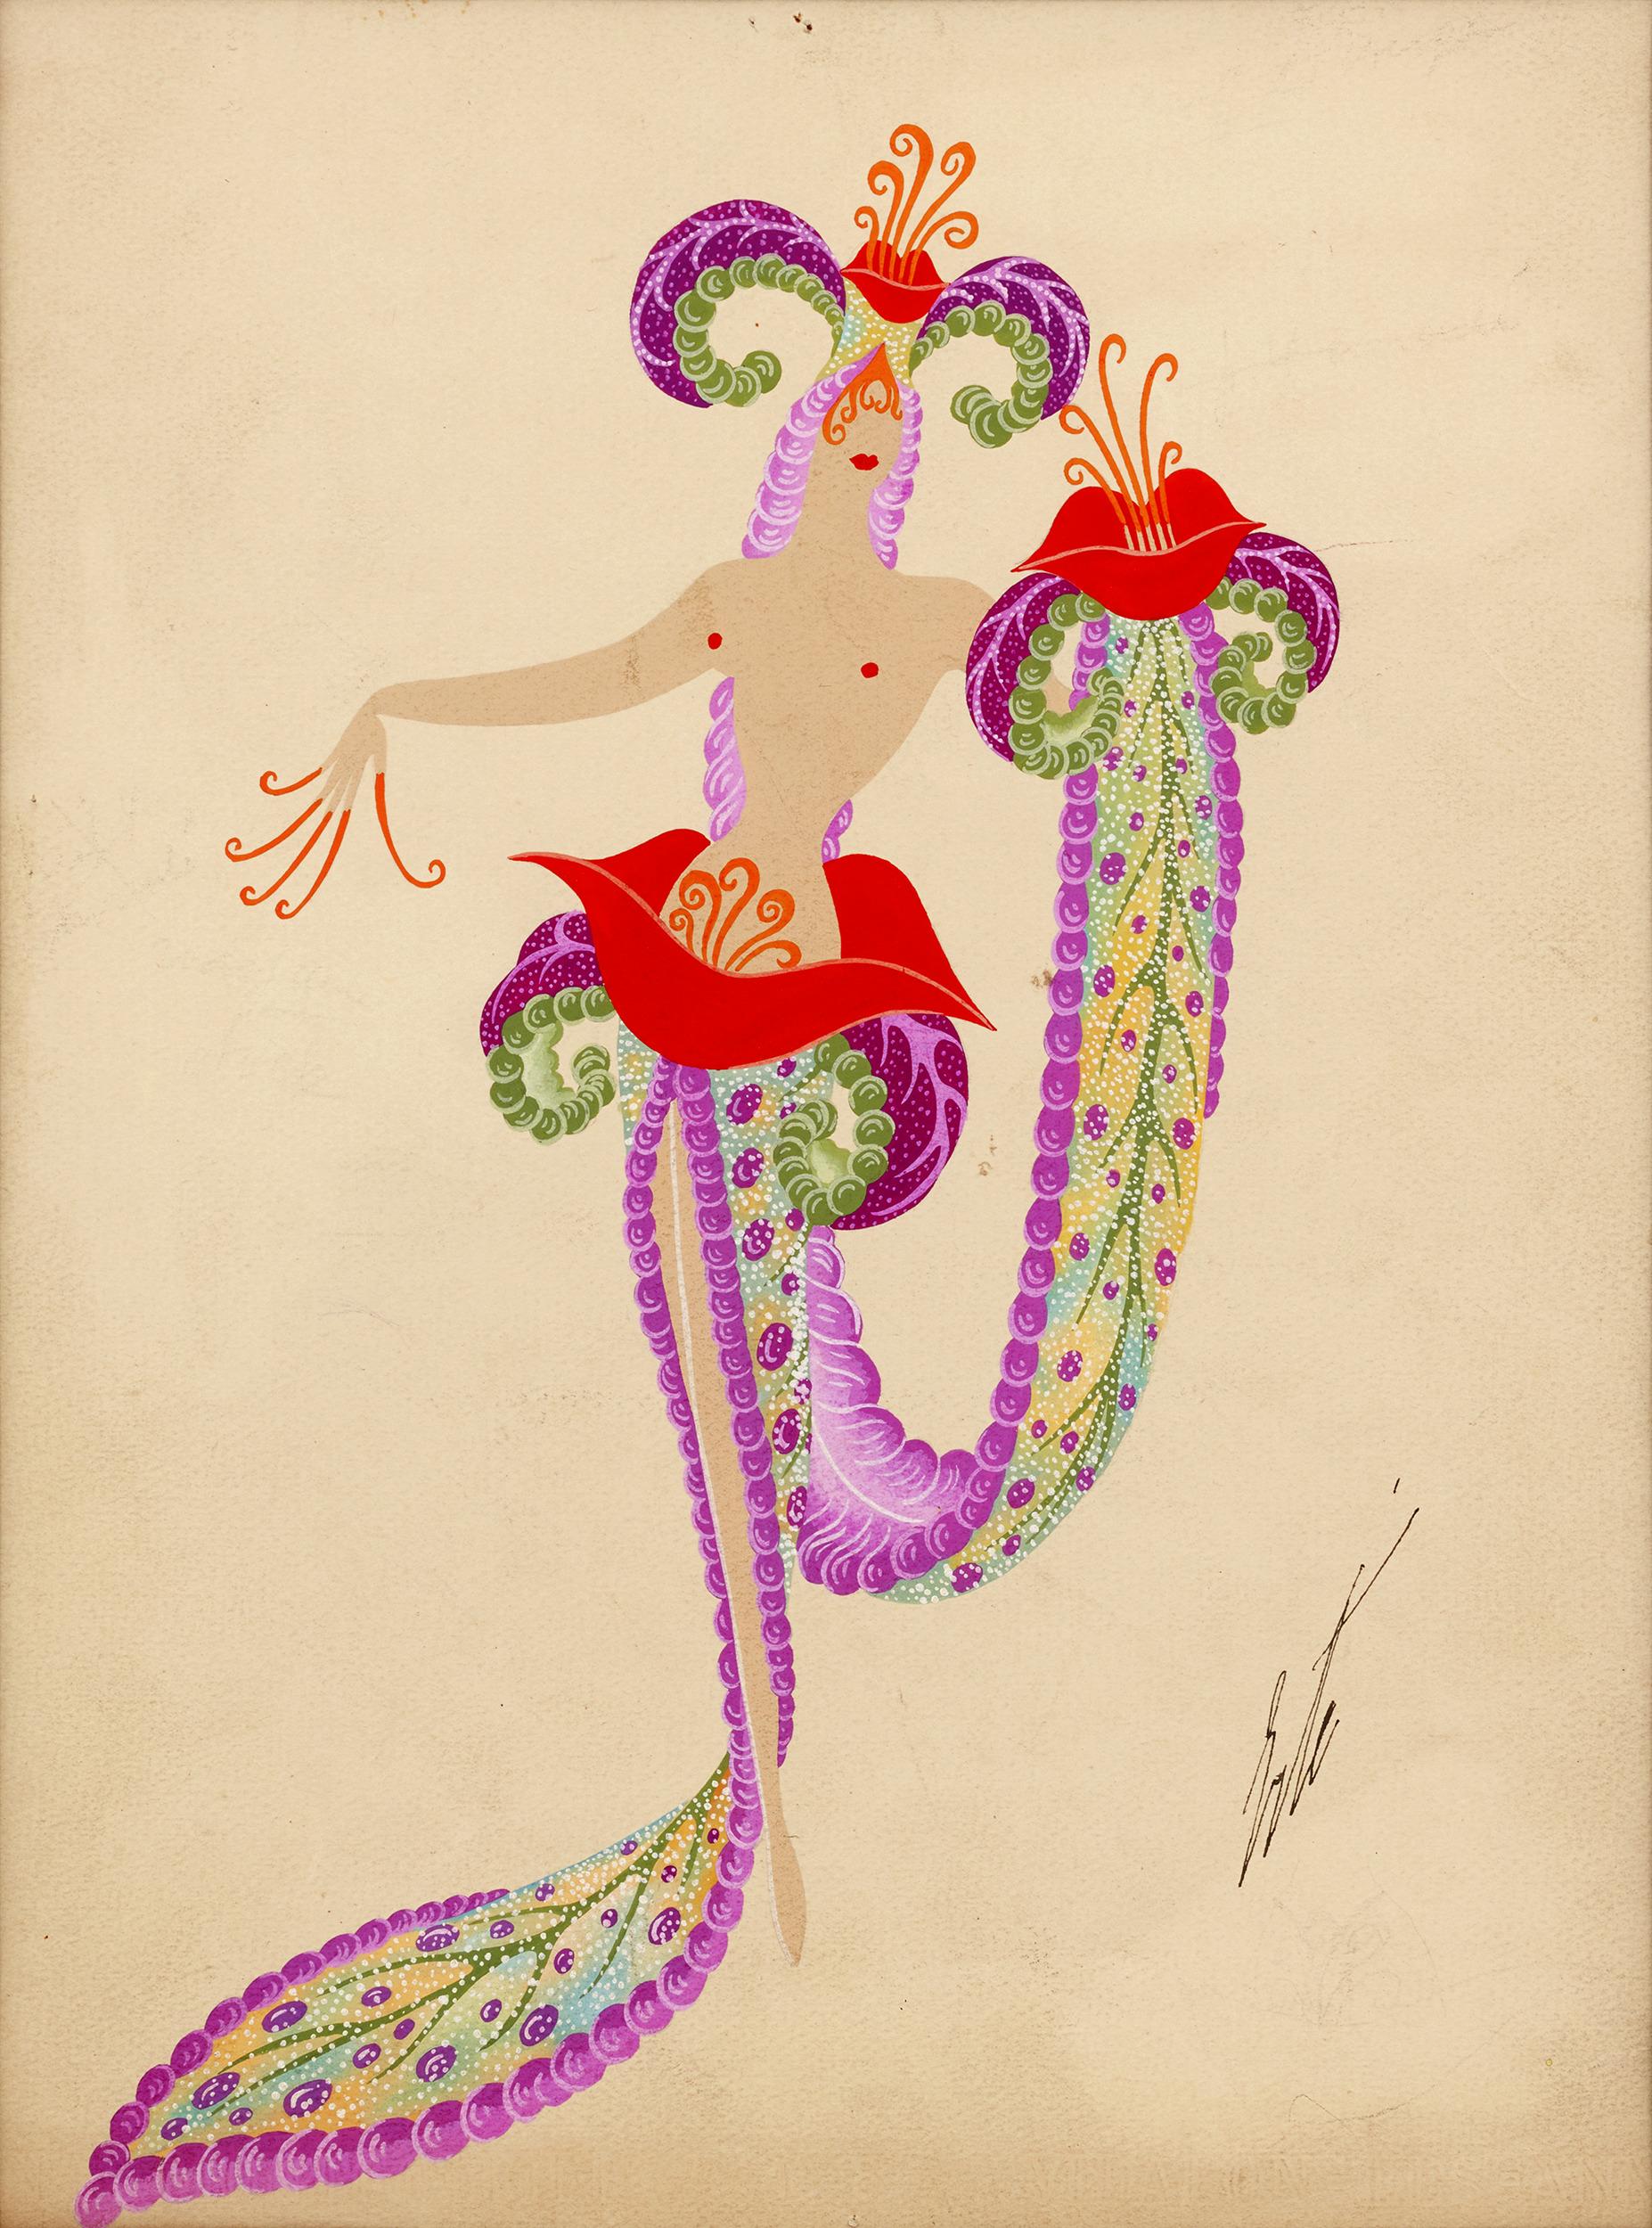 Erté (Romain de Tirtoff)
1892-1990  Russisch-Französisch
Fleurs du Mal(Die Blumen des Bösen)

Signiert 